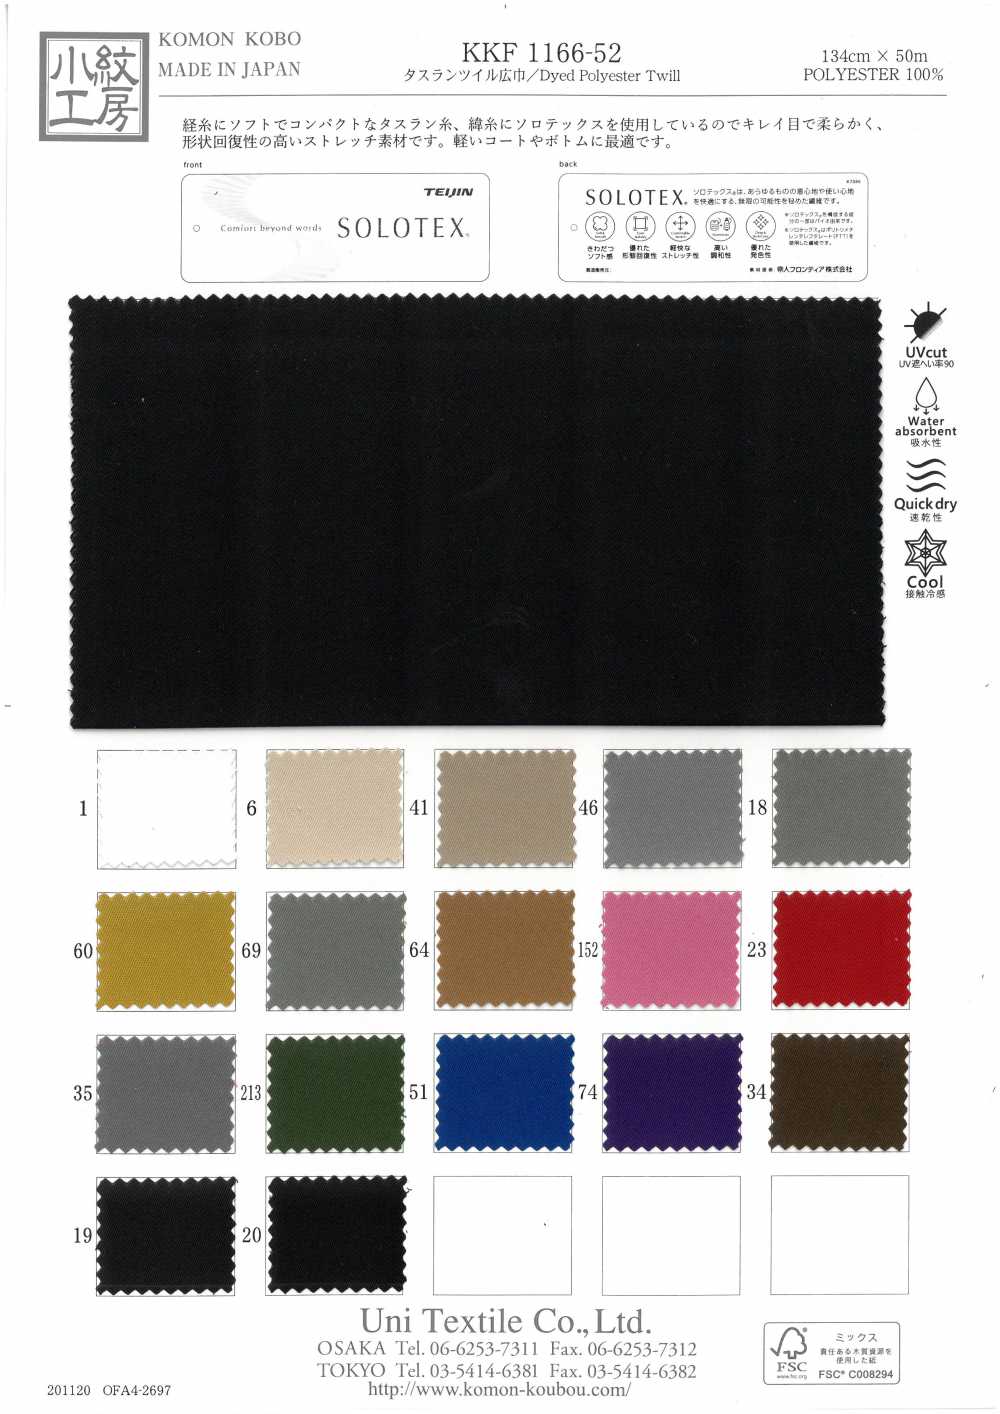 KKF1166-52 Taslan Twill Ampia Larghezza[Tessile / Tessuto] Uni Textile